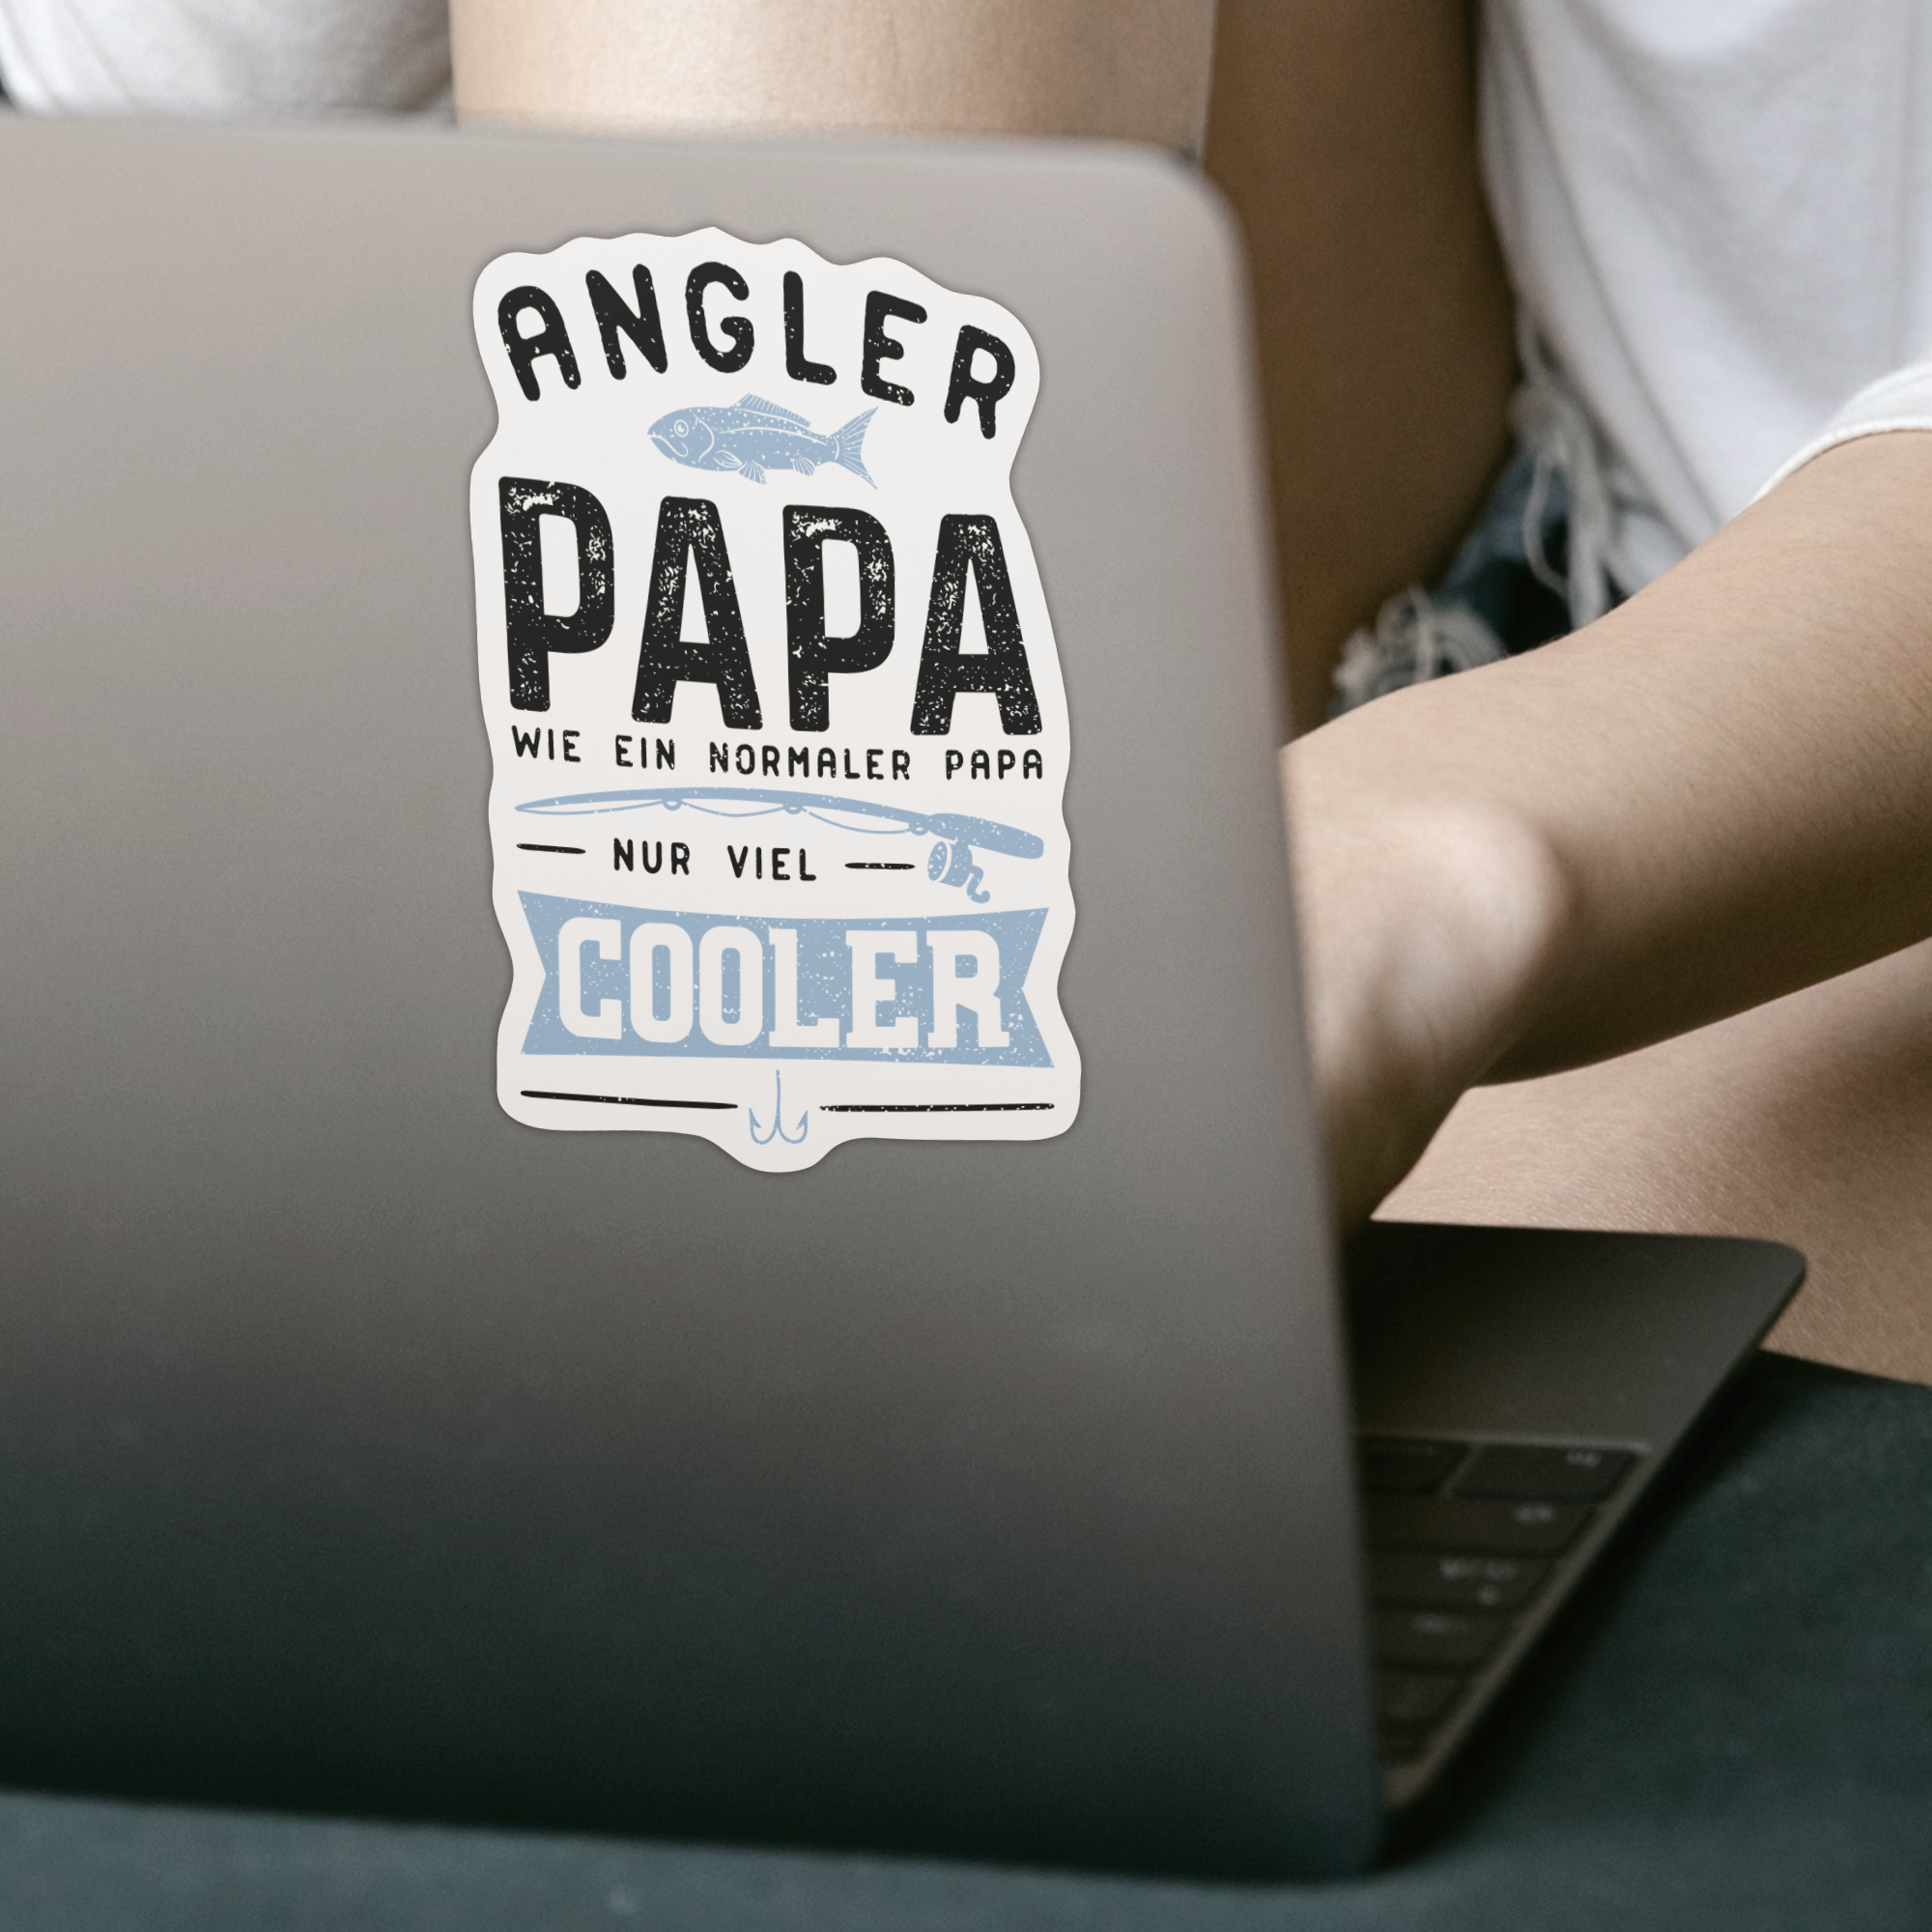 Angler Papa Wie Ein Normaler Papa Nur Viel Cooler Sticker - DESIGNSBYJNK5.COM